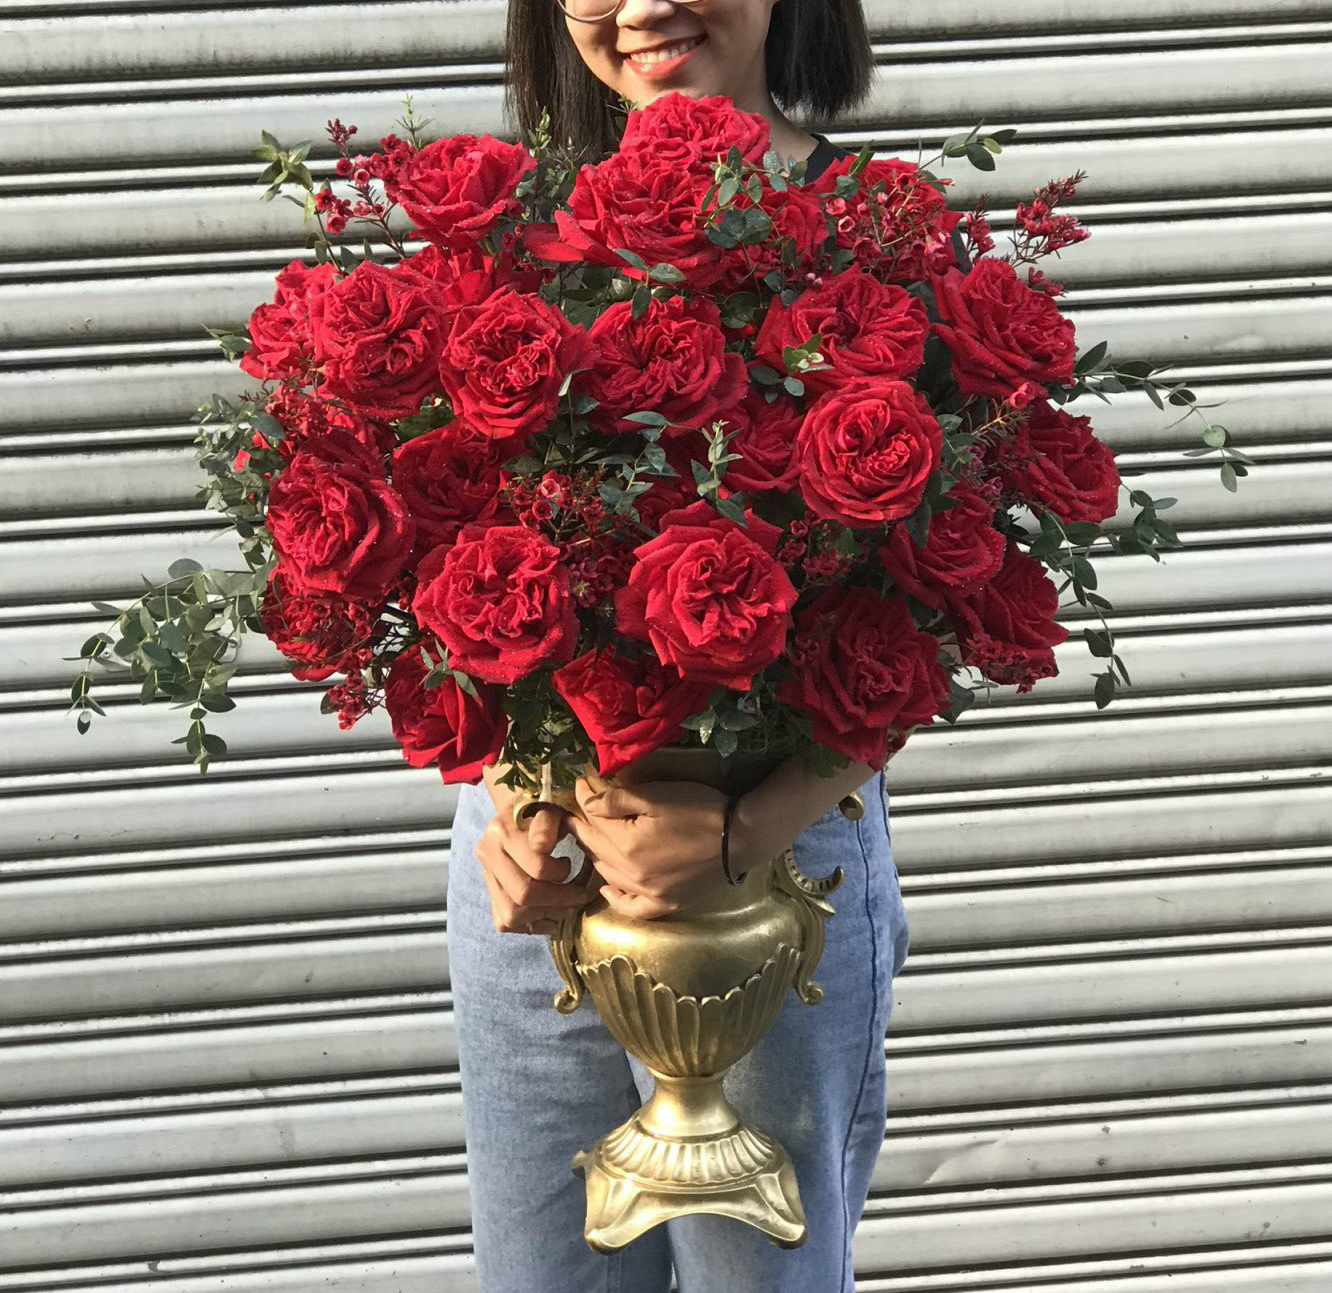 Shop hoa tươi Sunny là địa chỉ mua hoa hồng đỏ uy tín